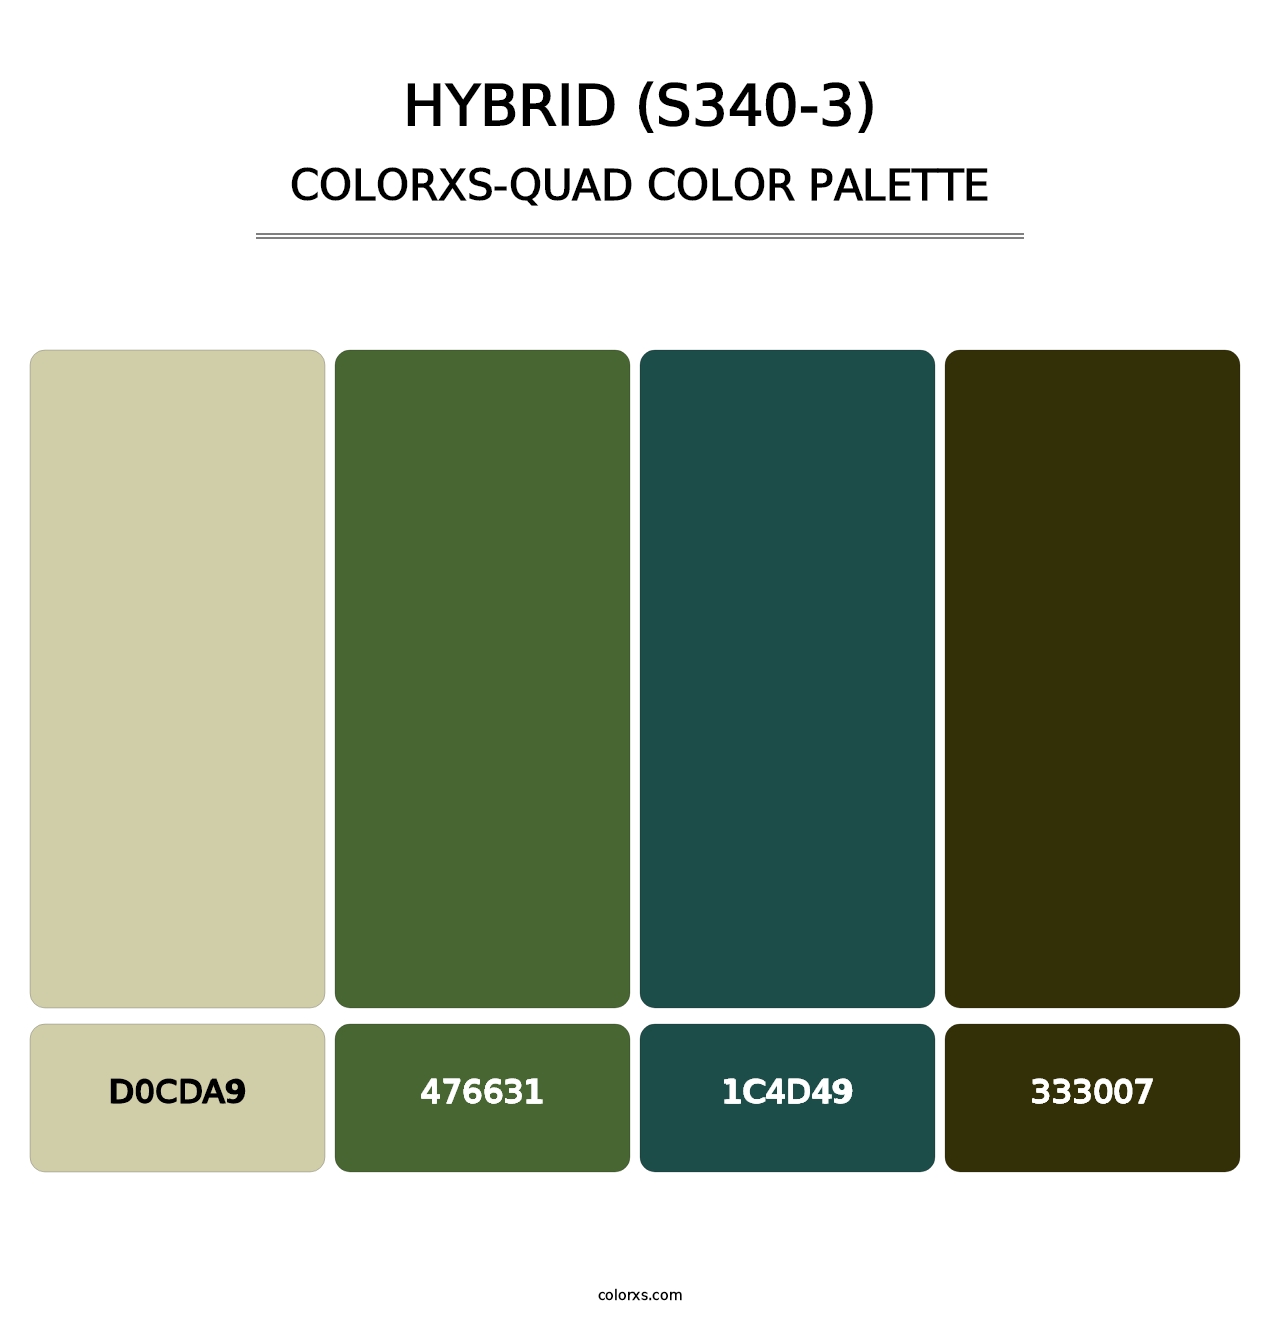 Hybrid (S340-3) - Colorxs Quad Palette